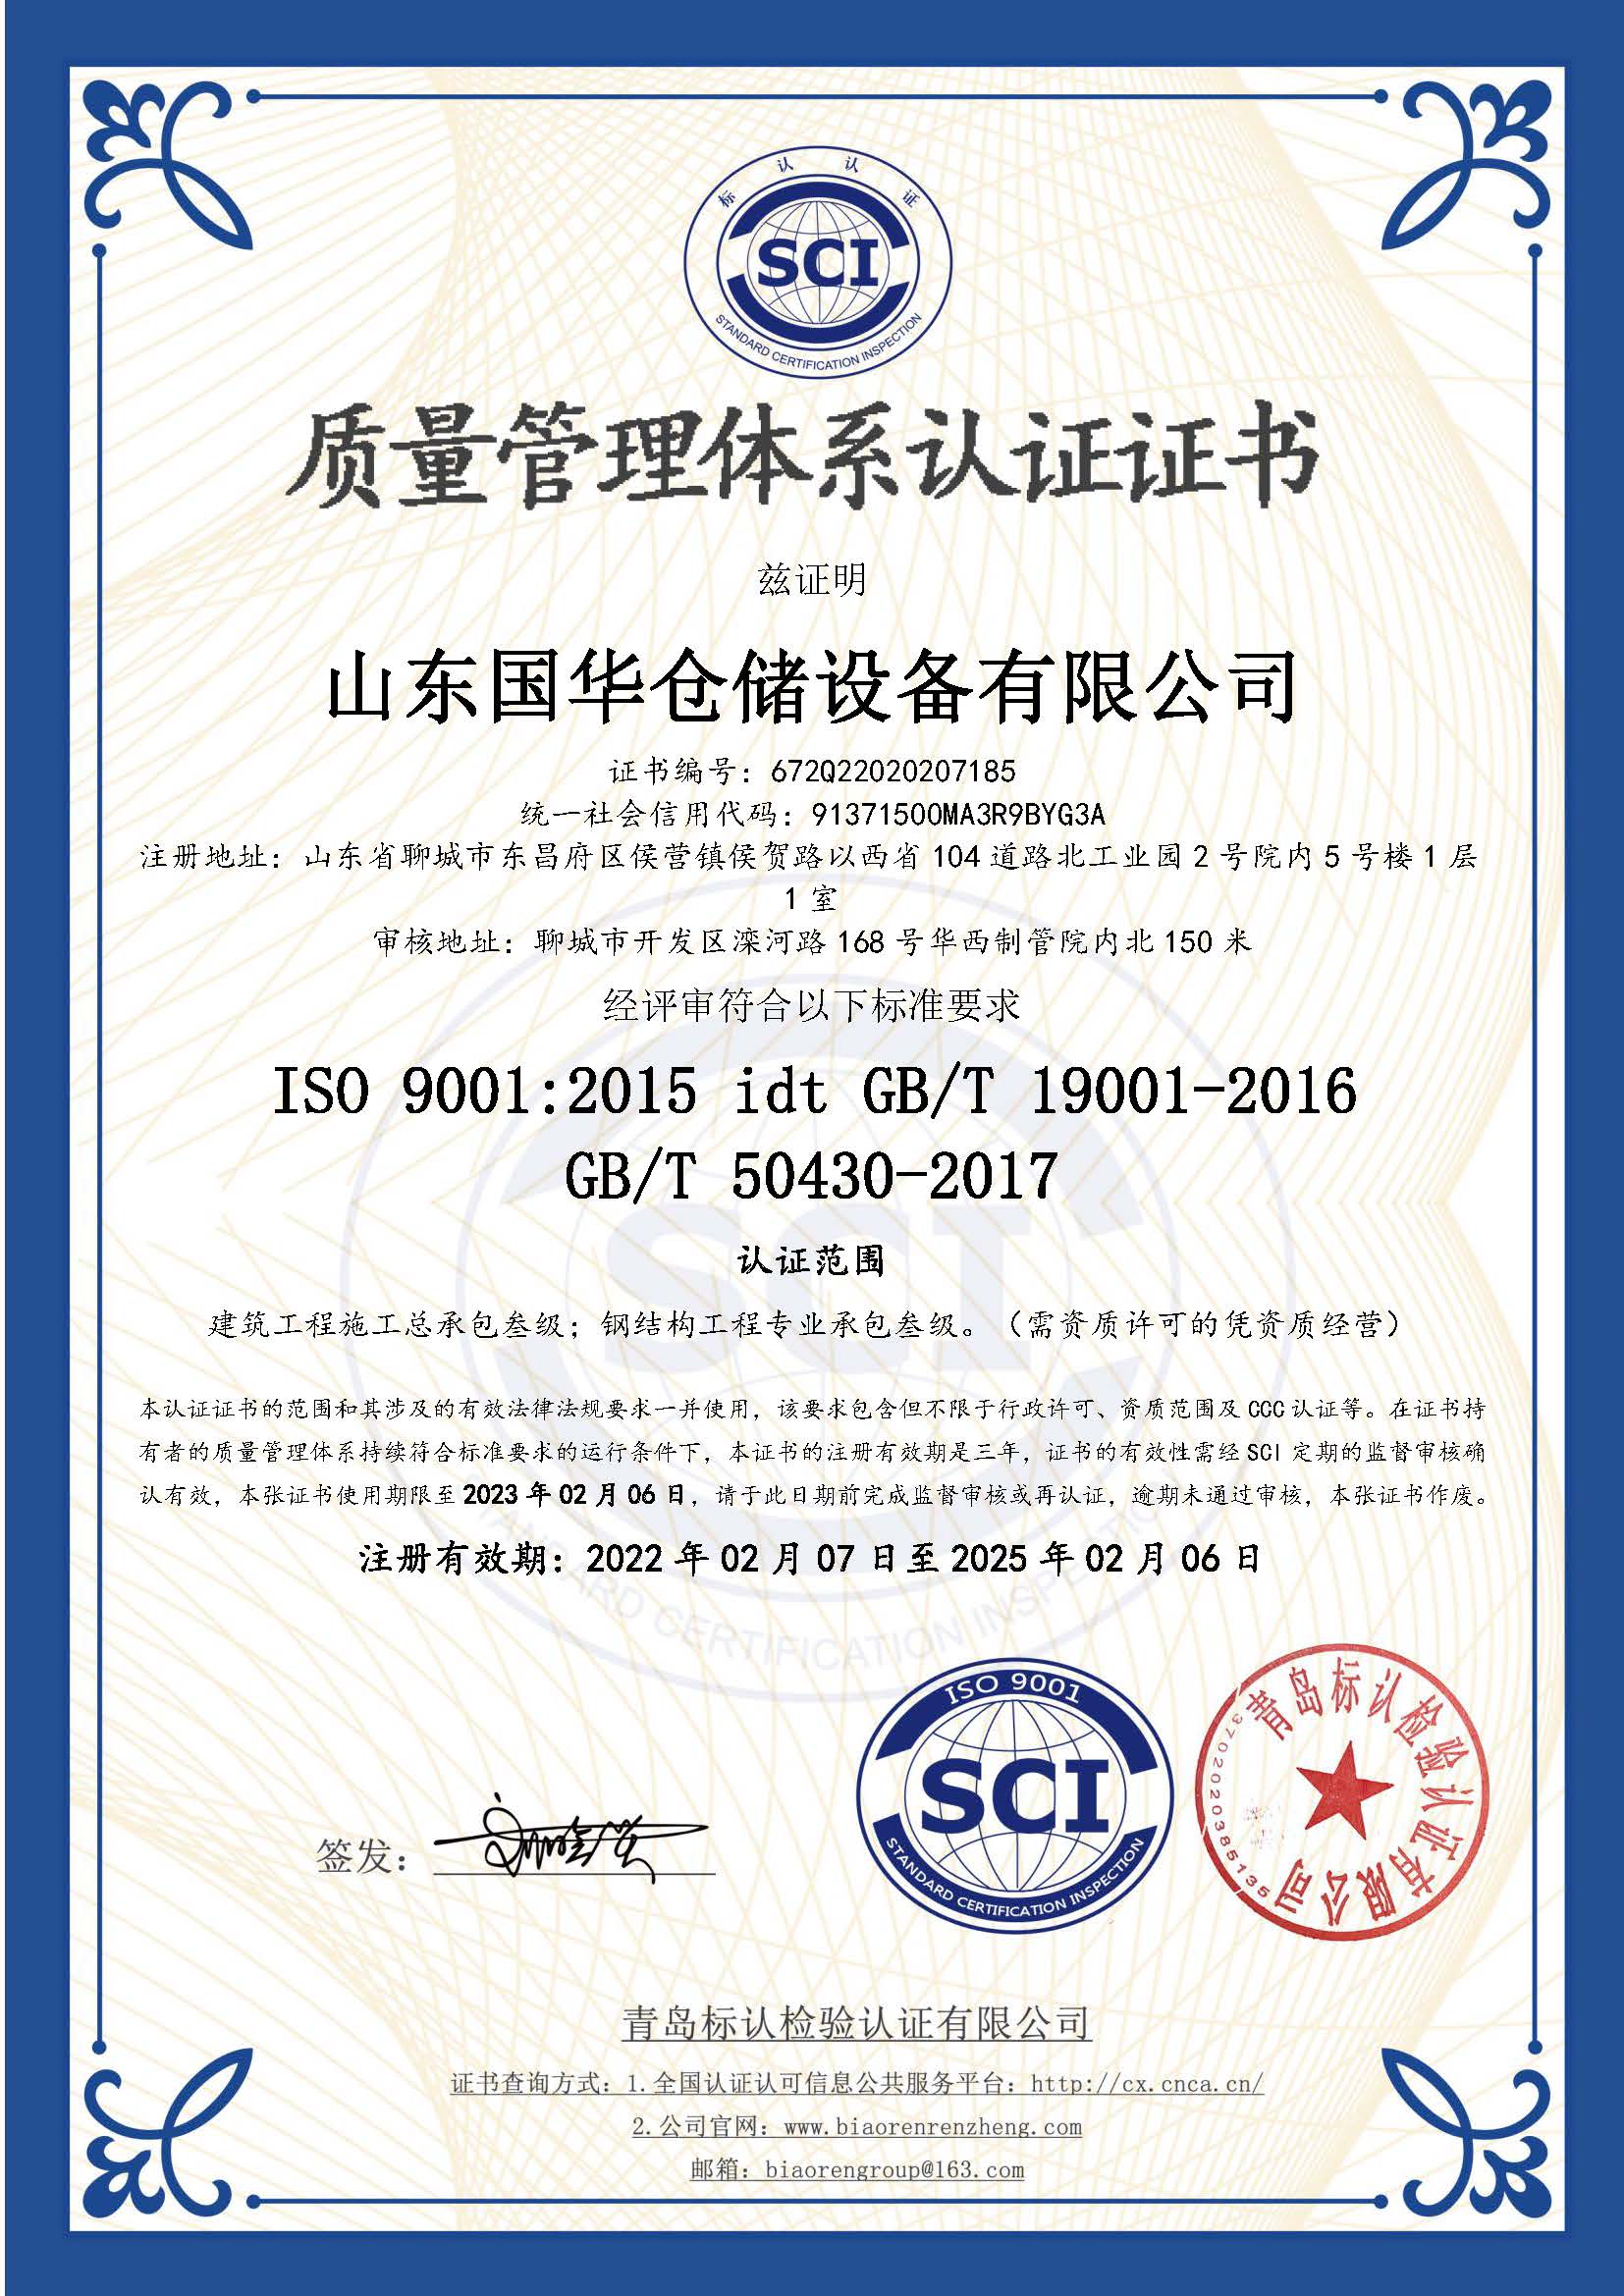 白沙钢板仓ISO质量体系认证证书